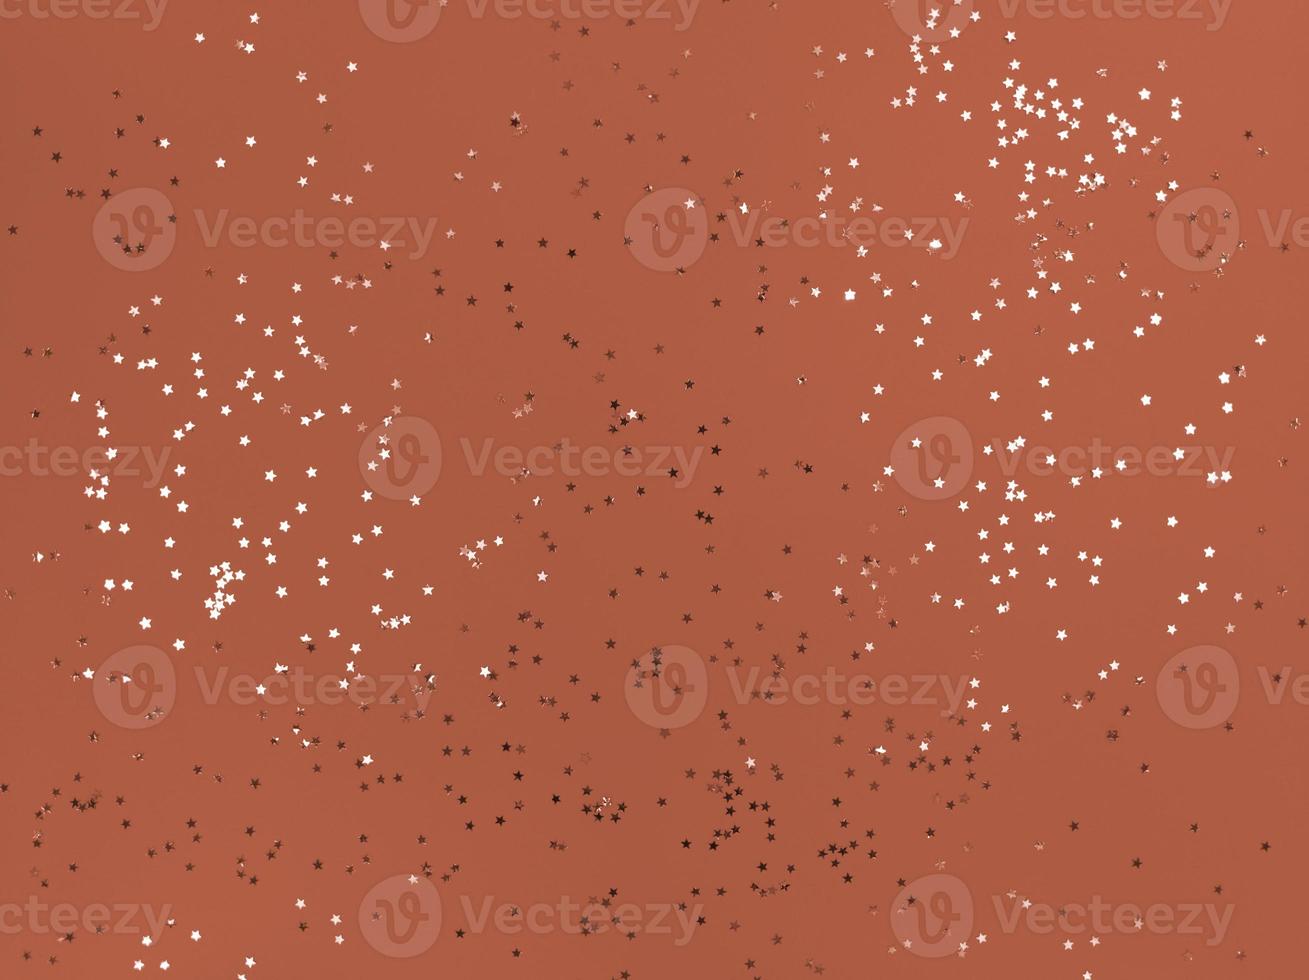 Estrelas de confete cintilando em um fundo laranja foto